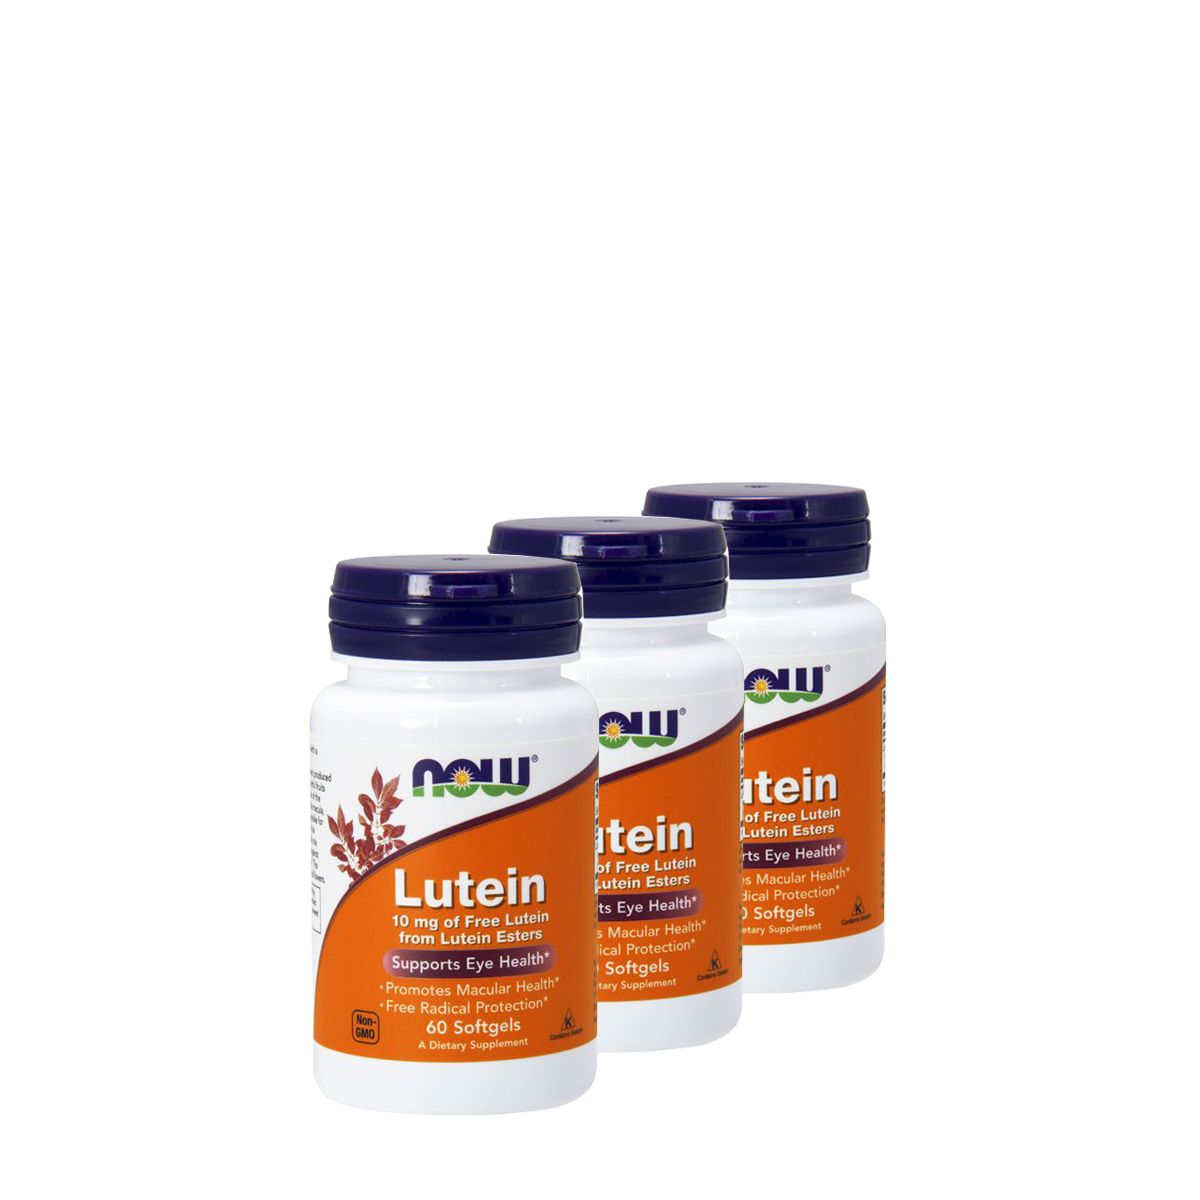 Lutein 10 mg lutein észterből, Now Free Lutein from Lutein Esters, 3x60 kapszula